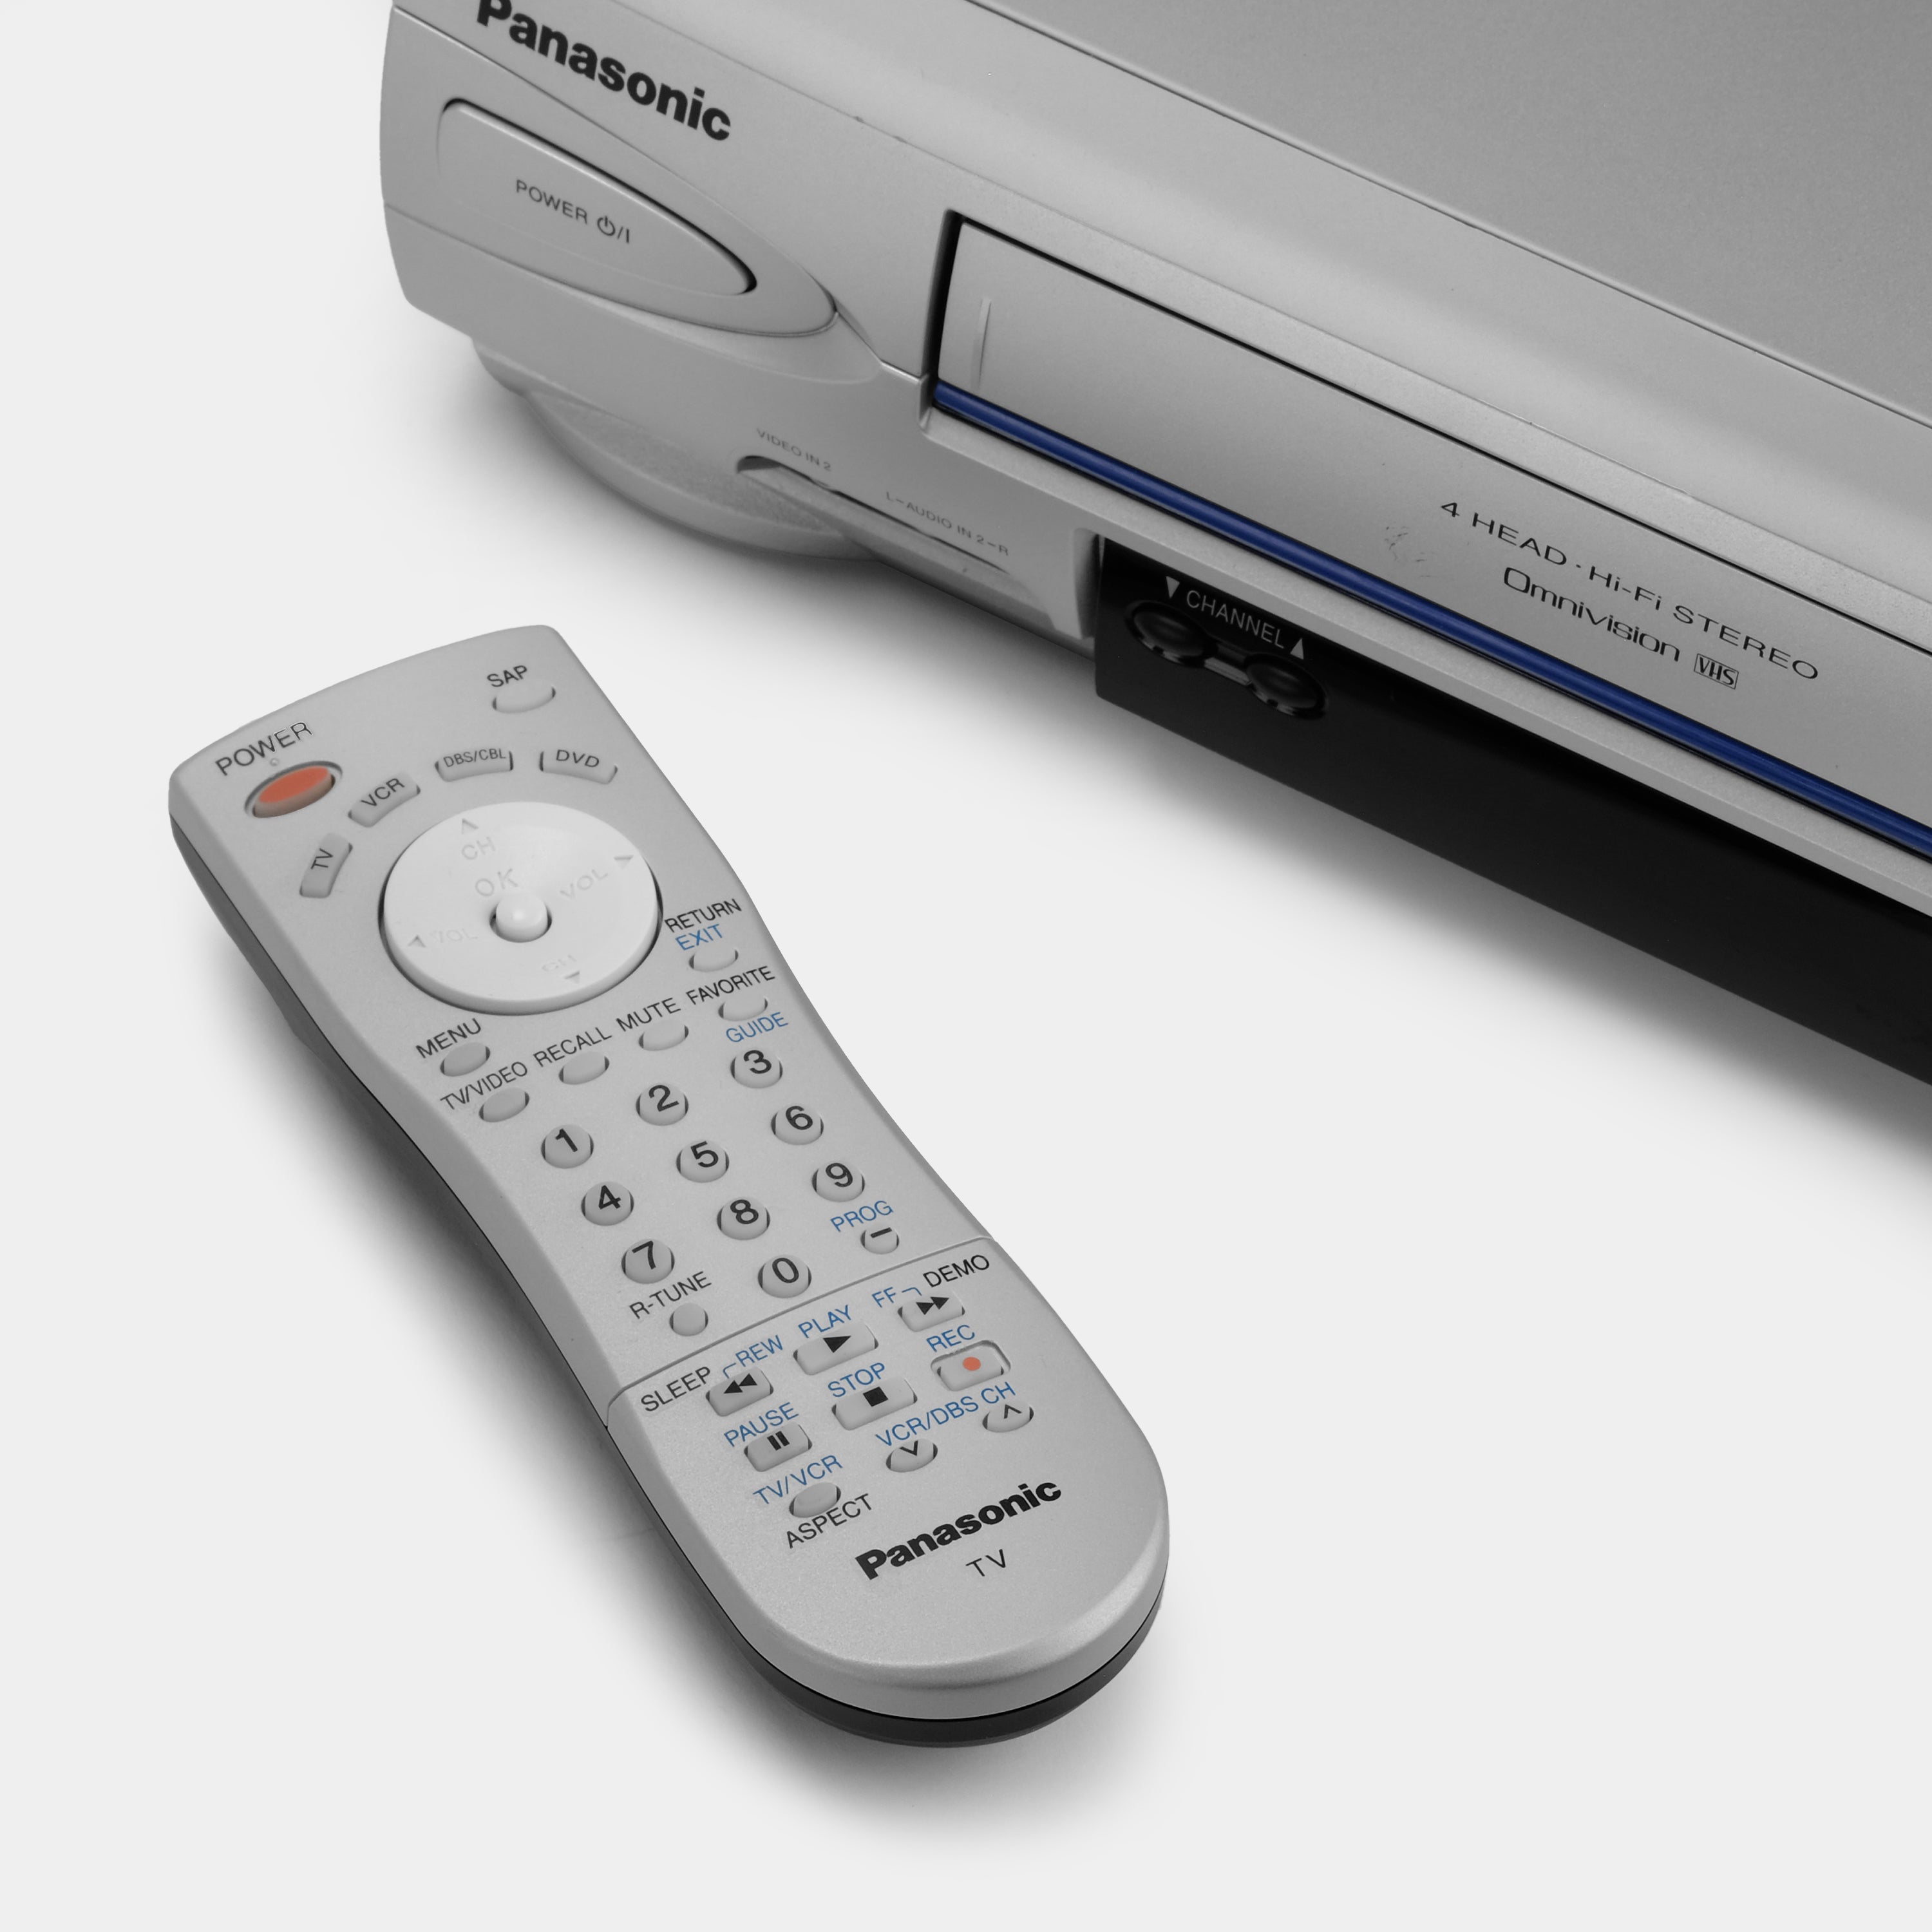 Panasonic PV-V4524S-K VCR VHS Player